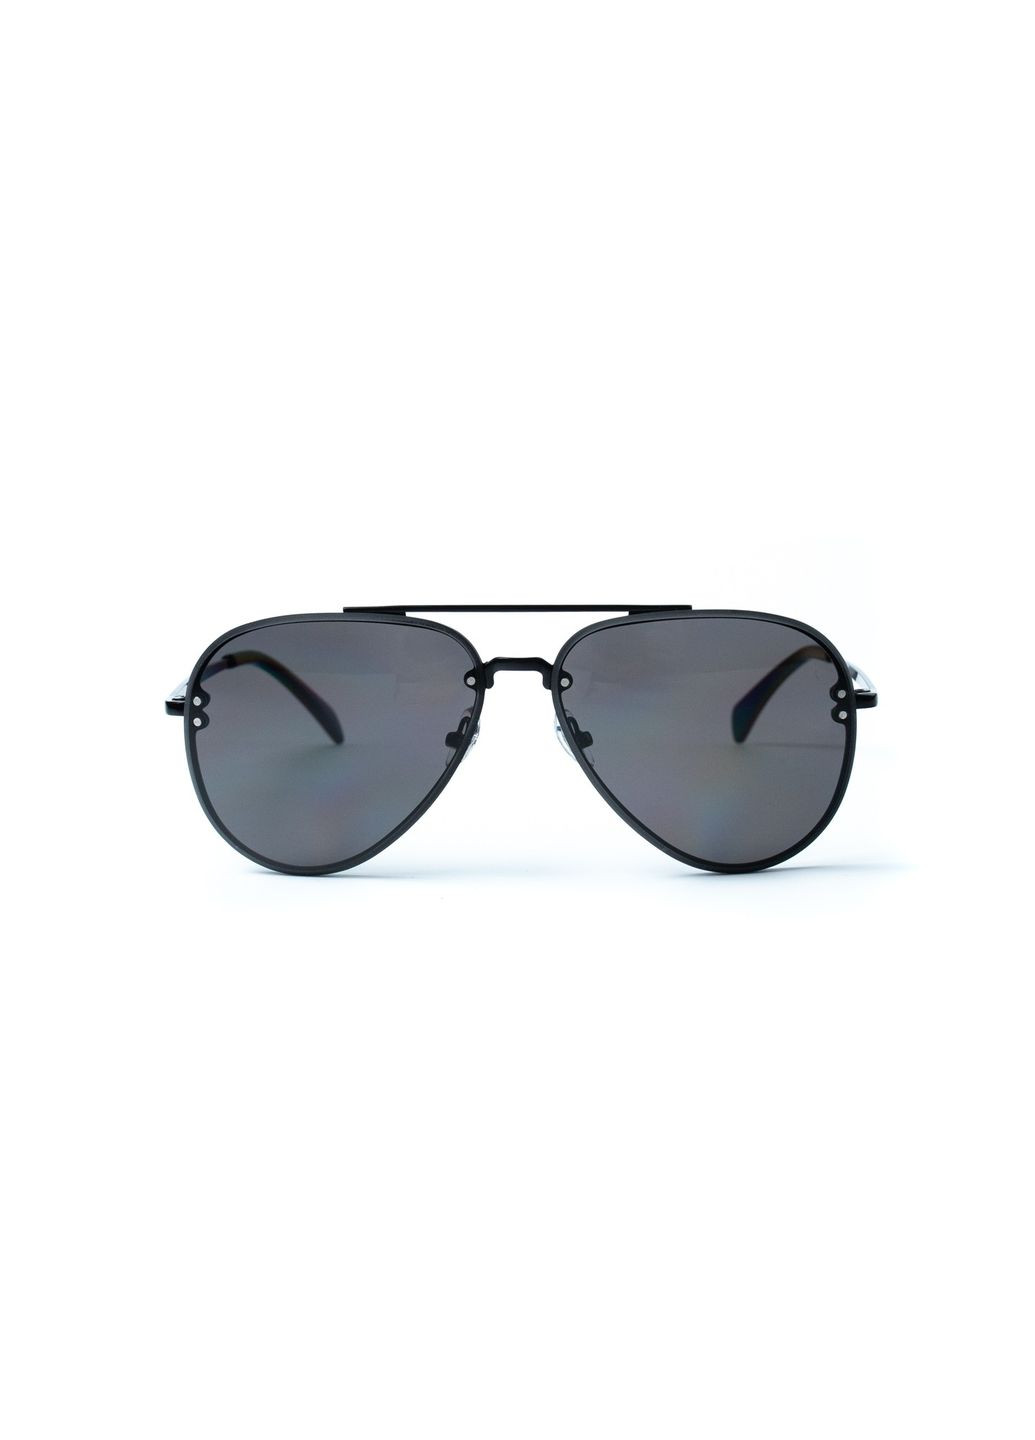 Солнцезащитные очки Авиаторы женские LuckyLOOK 445-604 (292735682)